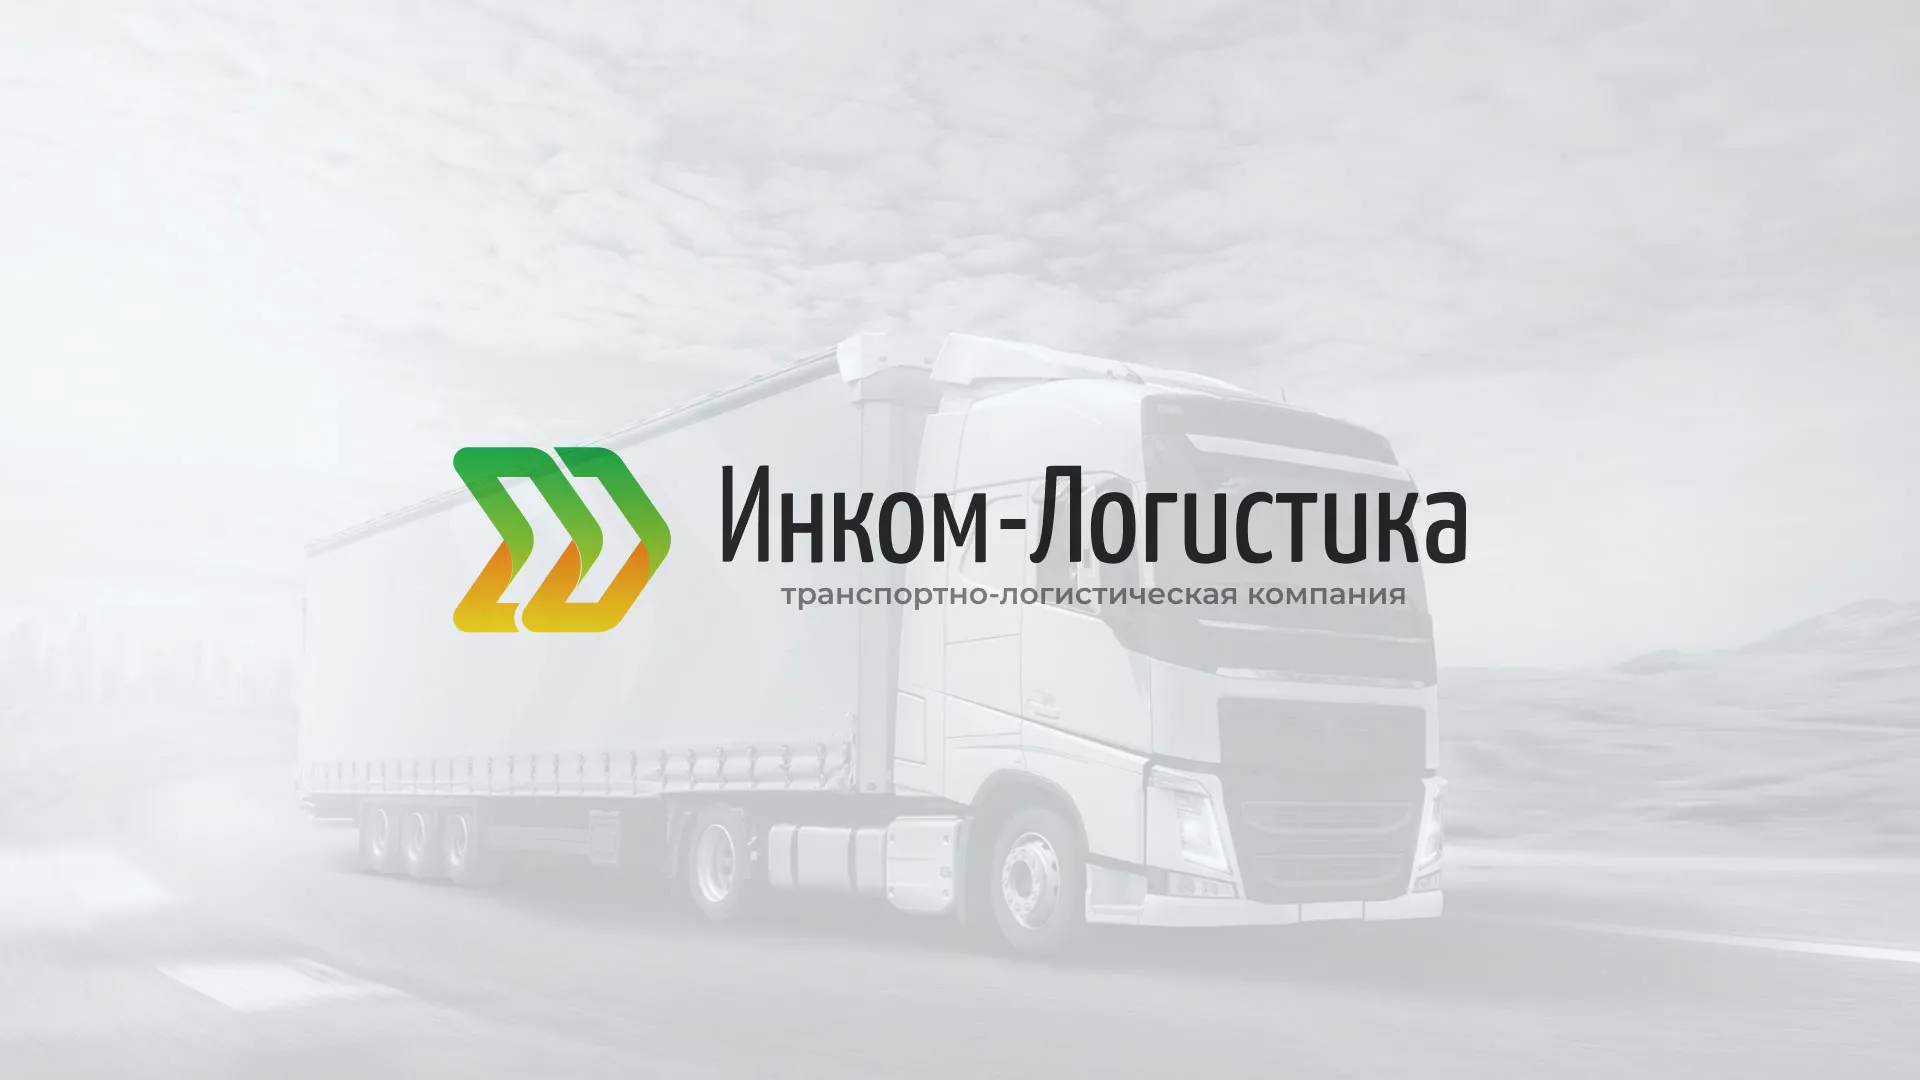 Разработка логотипа и сайта компании «Инком-Логистика» в Новоалександровске